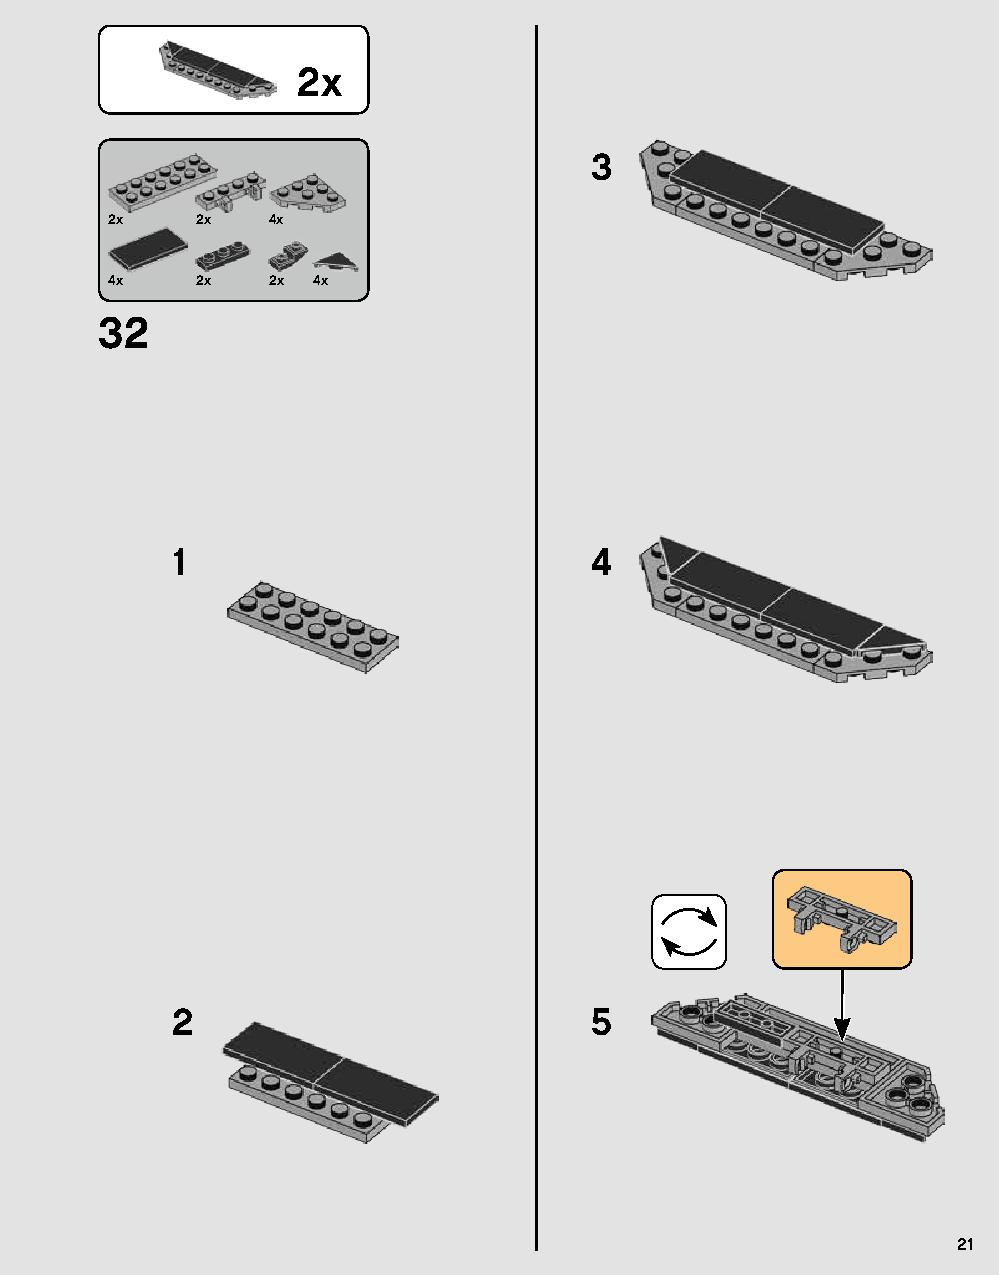 ダース・ベイダーの城 75251 レゴの商品情報 レゴの説明書・組立方法 21 page